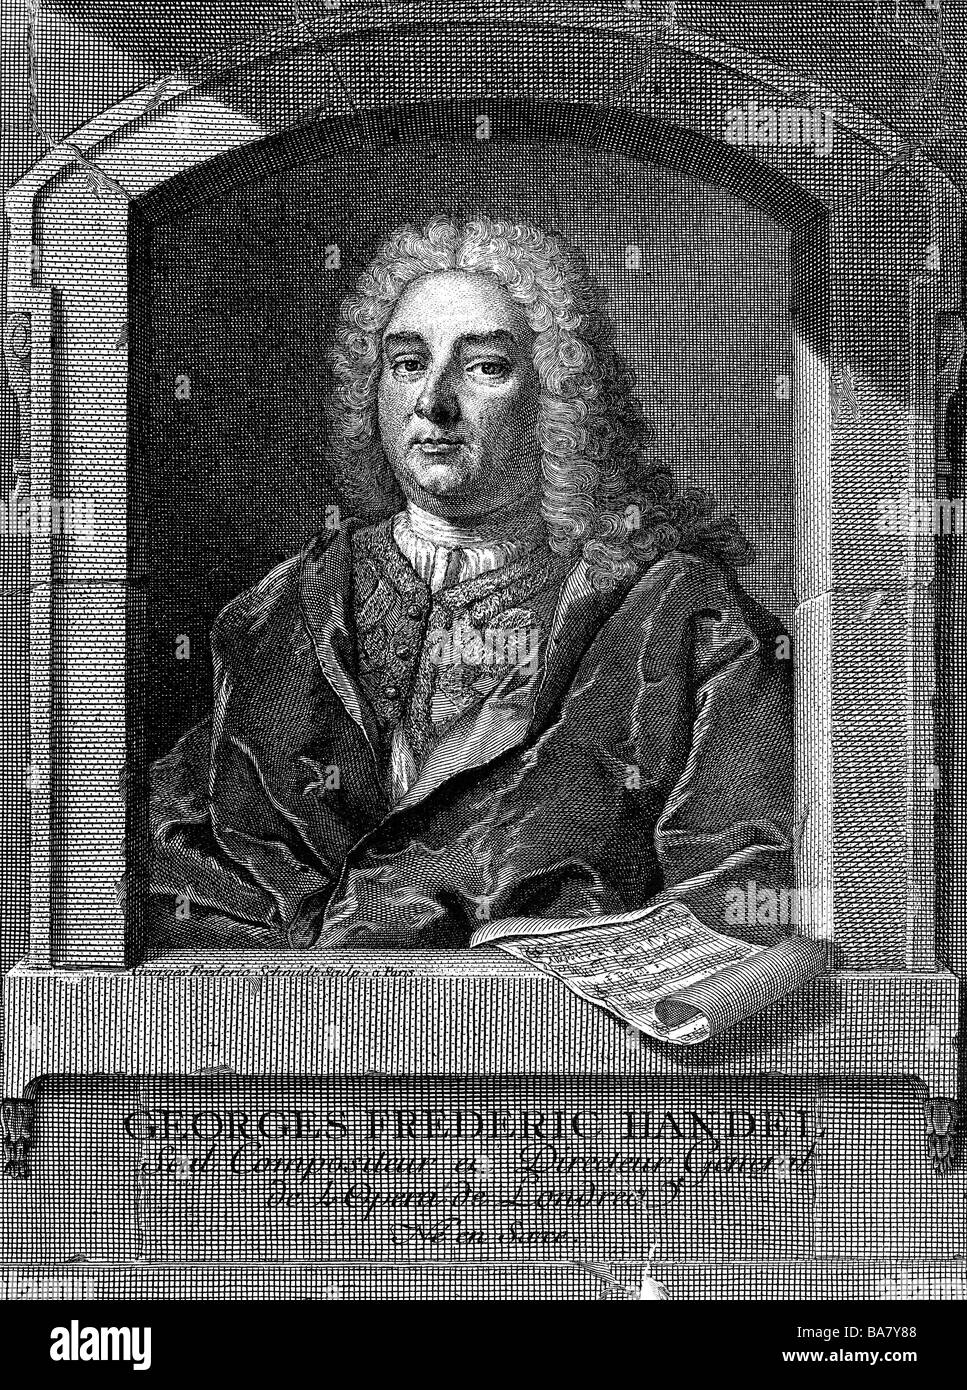 George Frederic Handel, 23.2.1685 - 14.4.1759, compositeur allemand, demi-longueur, gravure sur cuivre par Georg Friedrich Schmidt, milieu du xviiie siècle, l'artiste a le droit d'auteur , de ne pas être effacé Banque D'Images